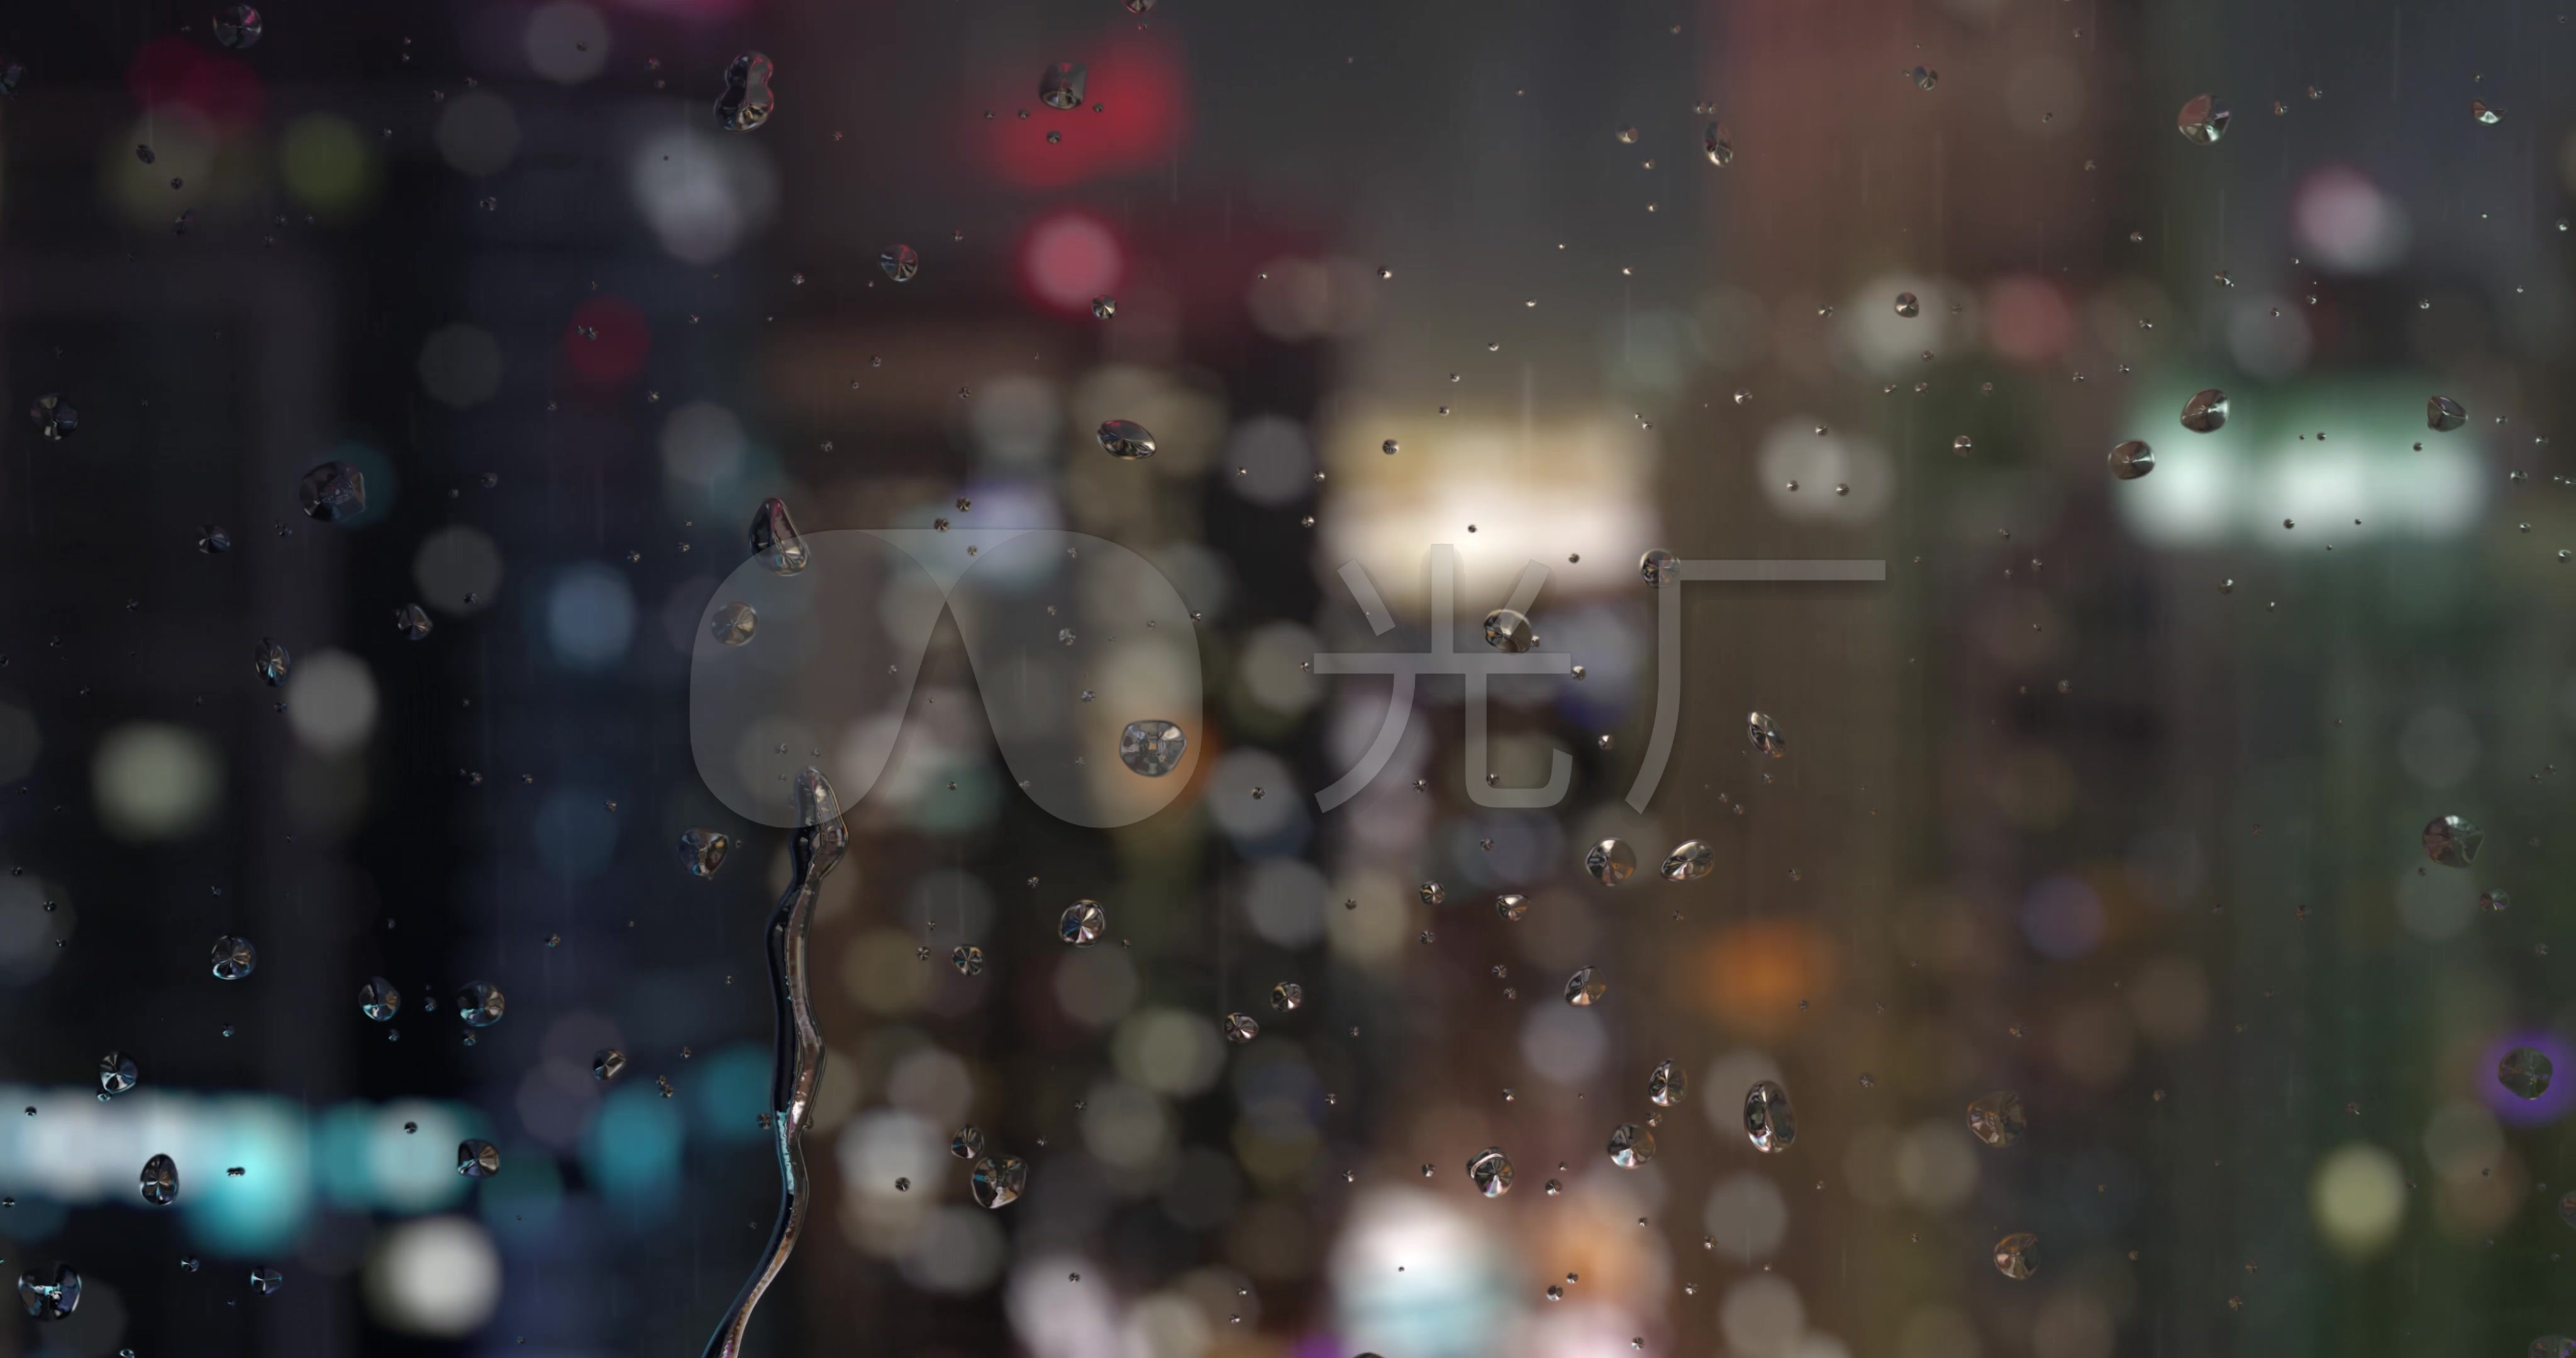 车窗上的雨滴高清摄影大图-千库网